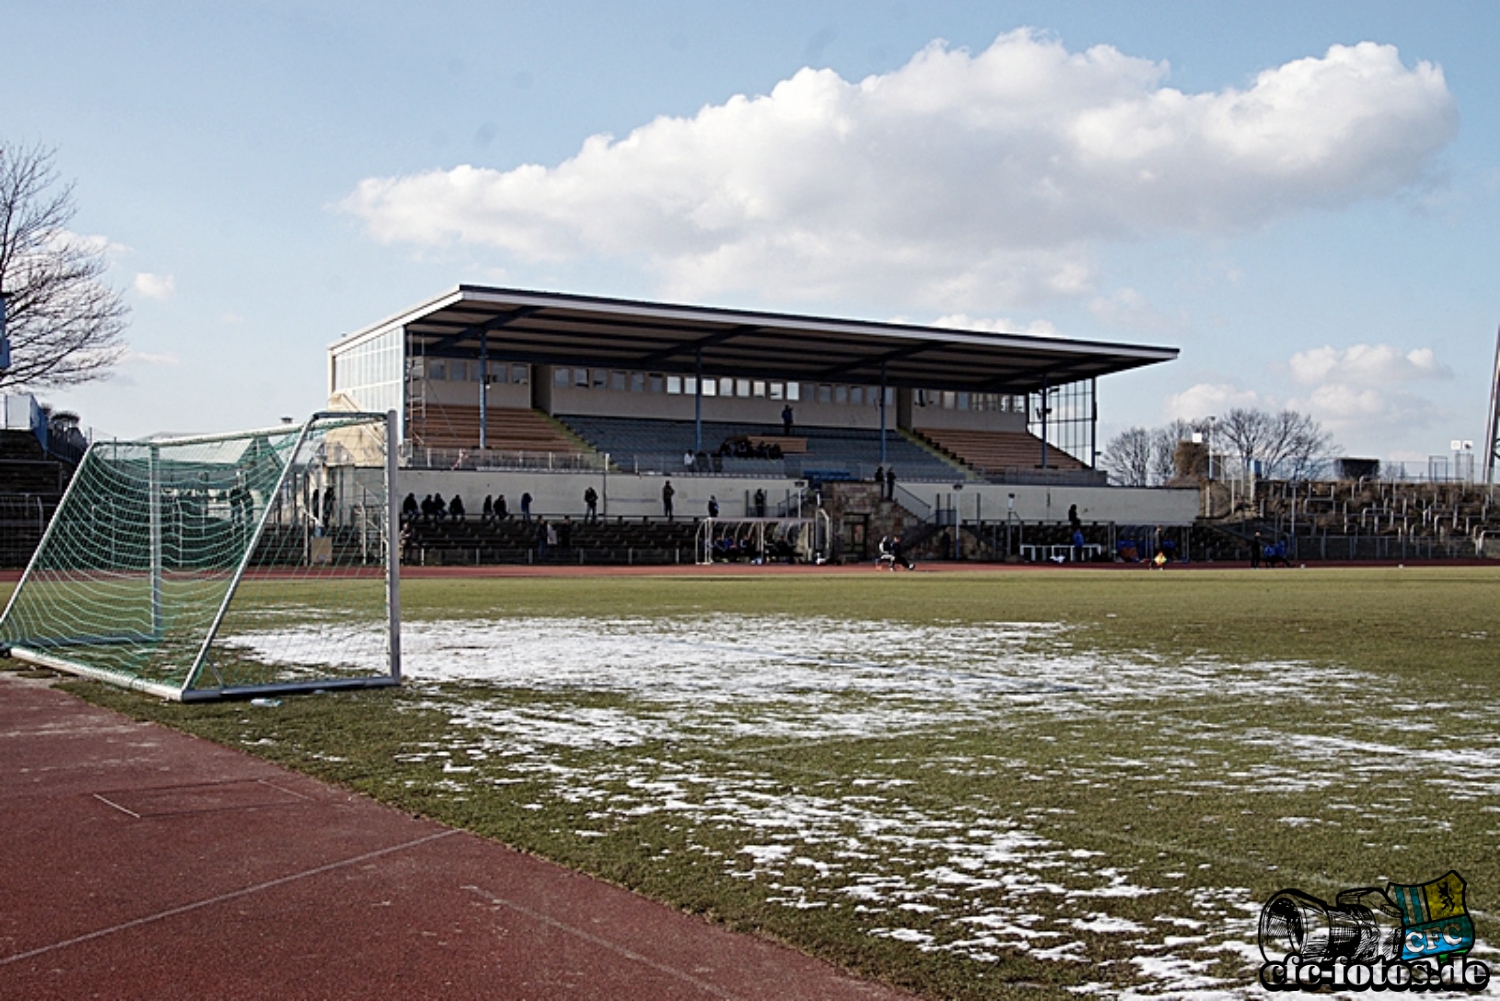 Chemnitzer FC - FSV Wacker Nordhausen 1:3 (0:2)